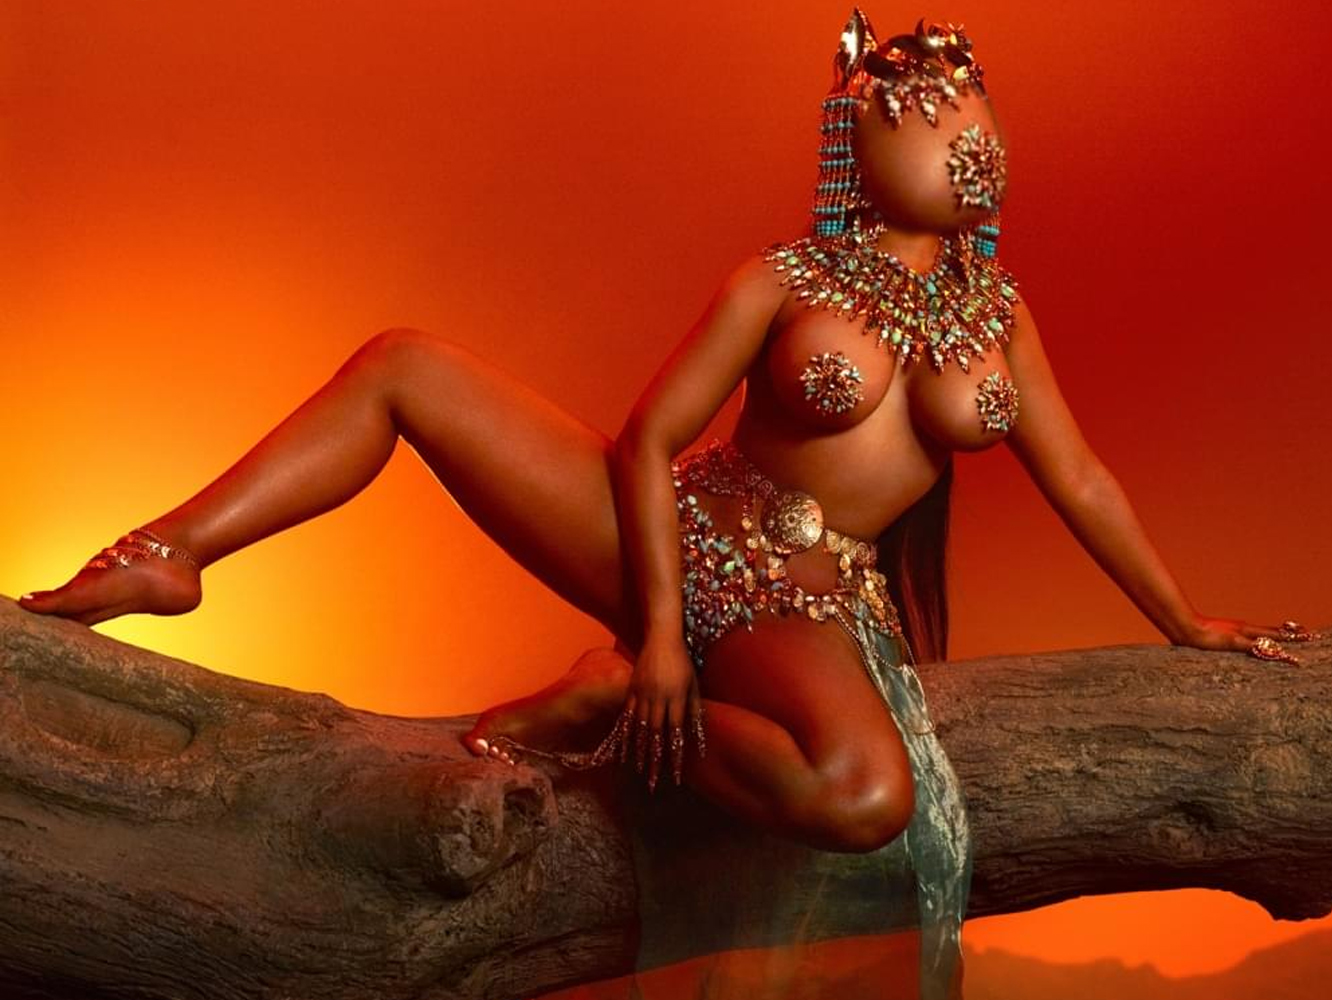  Nicki Minaj publicará hoy ‘Queen’, pero habiendo hecho un ridículo épico ayer